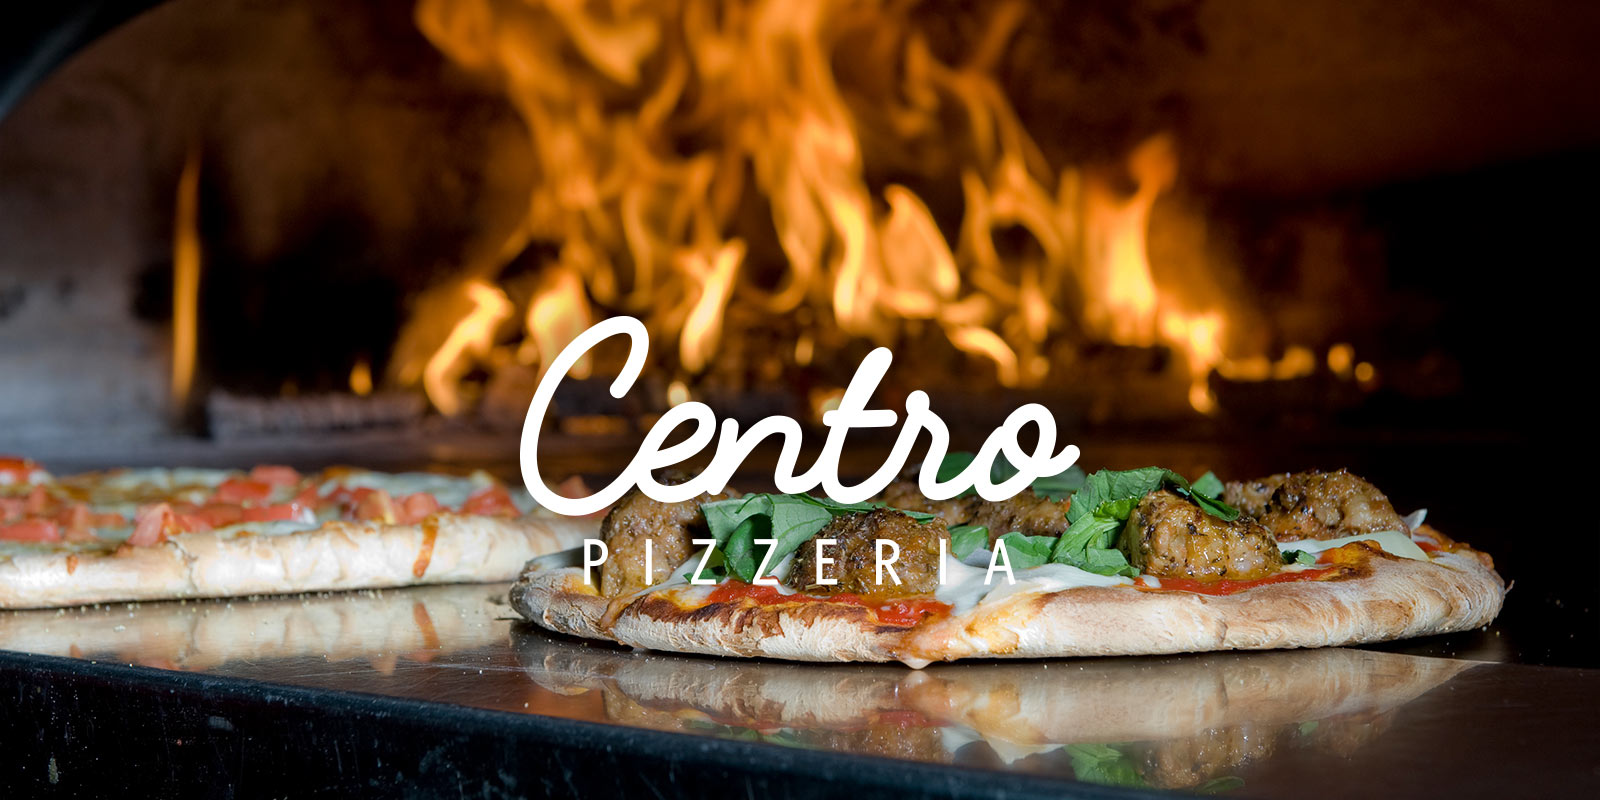 Centro Pizzeria - Every Ingredient Counts